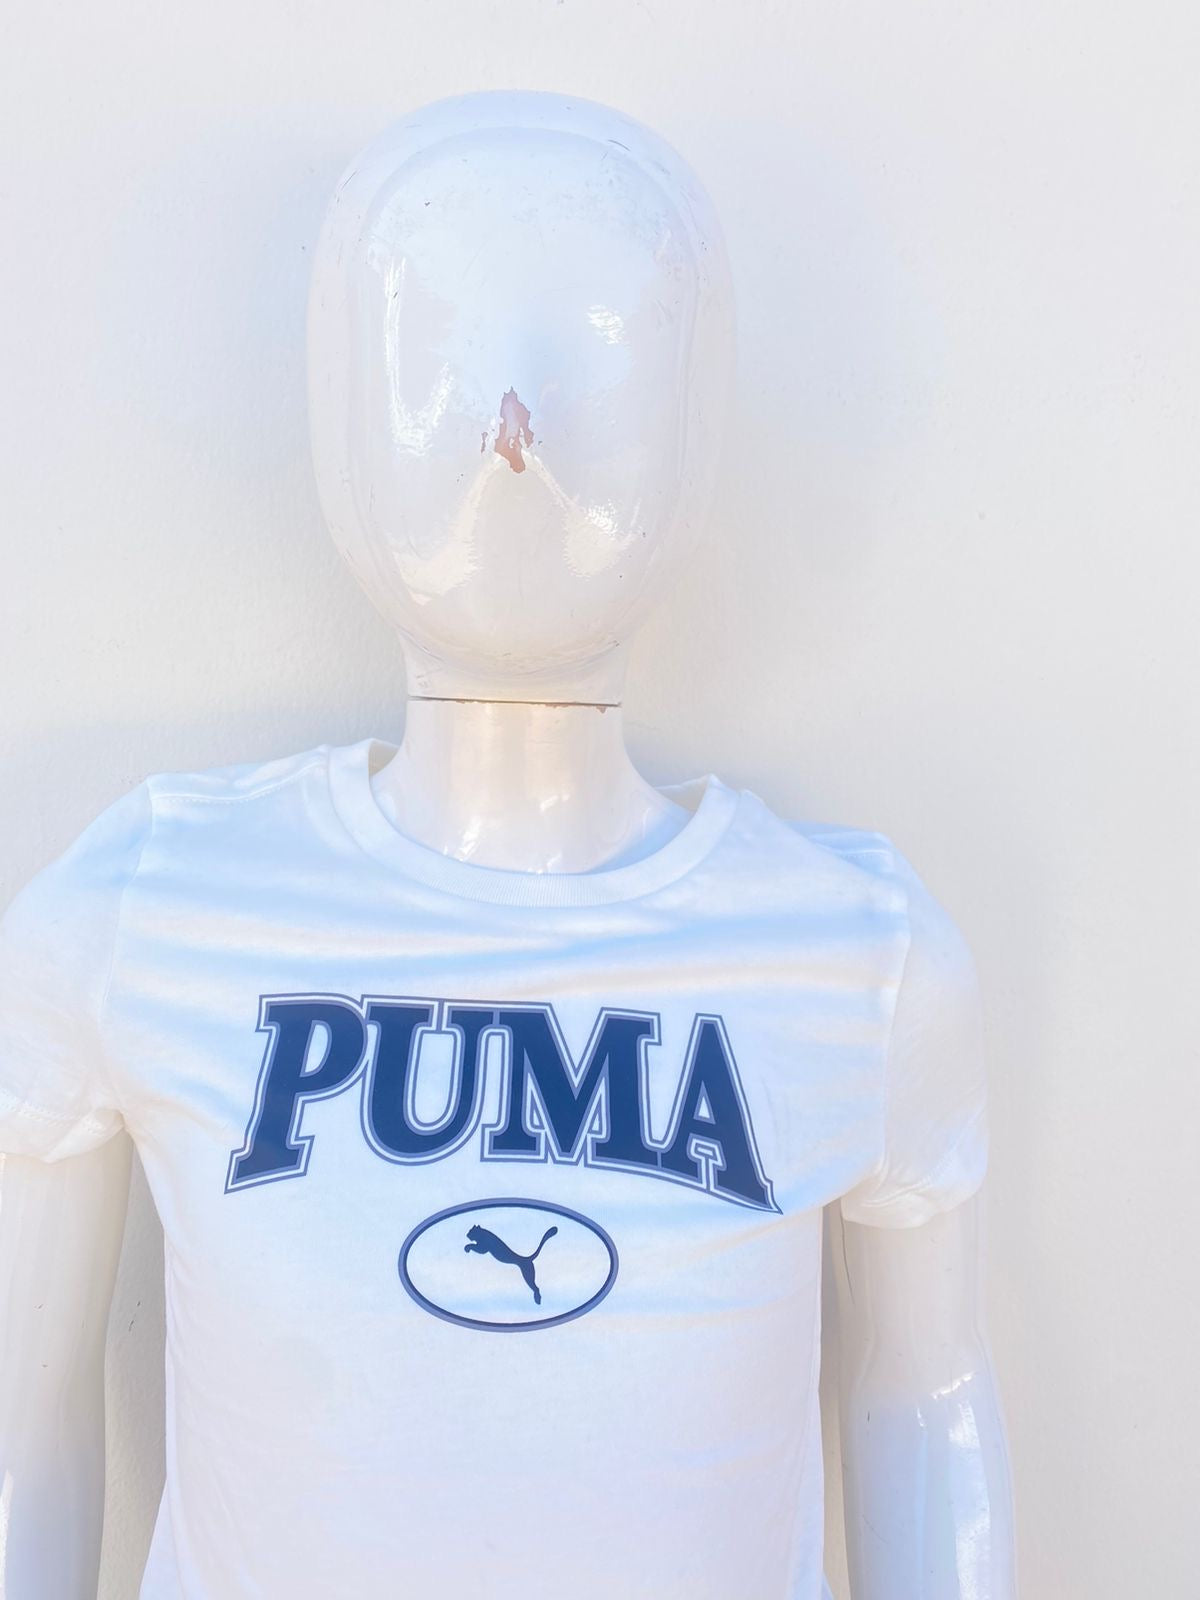 T-shirt Puma original blanco con letras PUMA en negro y un puma en un círculo.